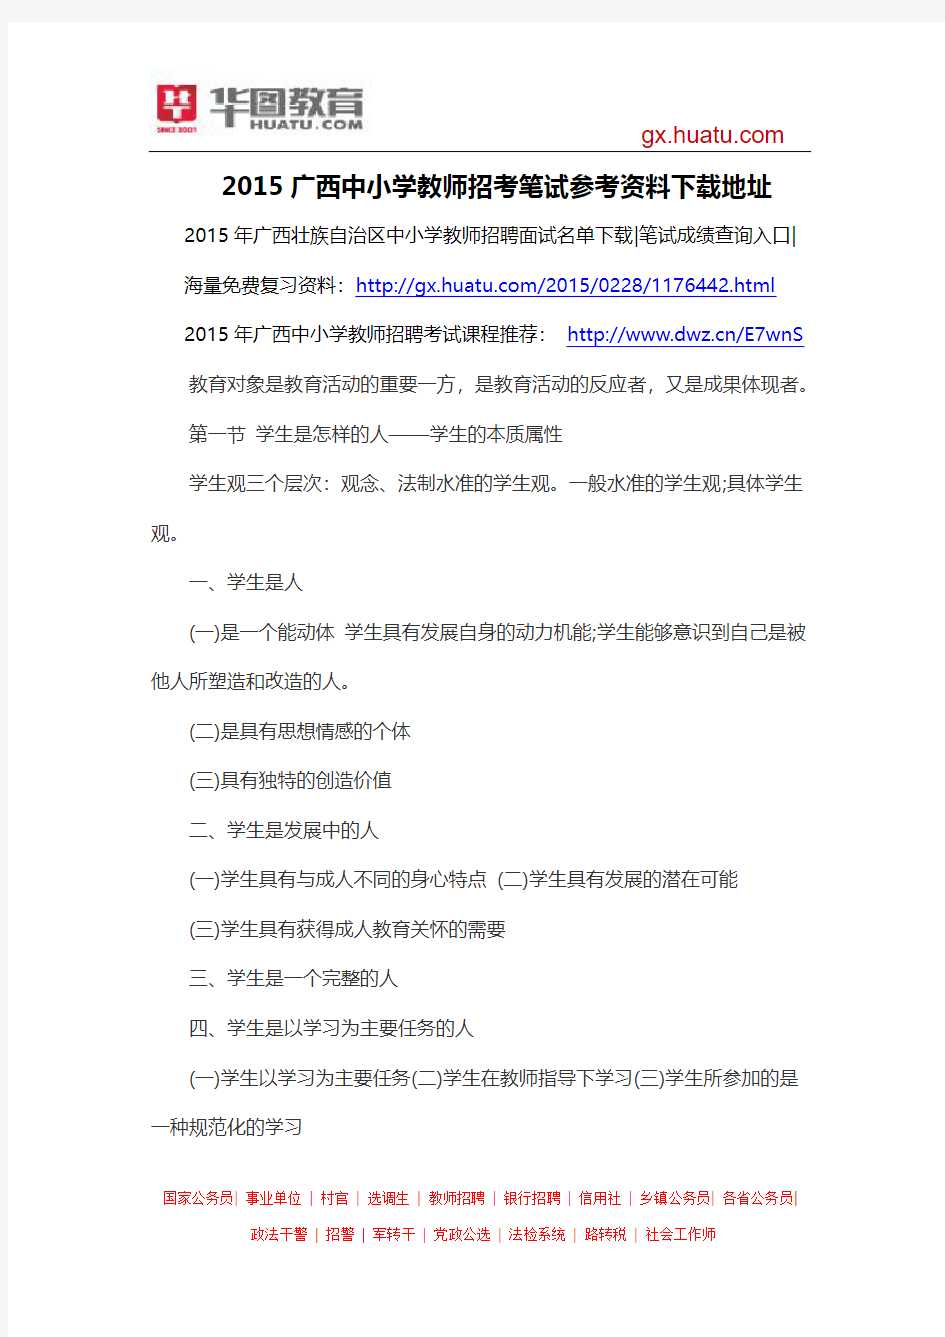 2015广西中小学教师招考笔试参考资料下载地址